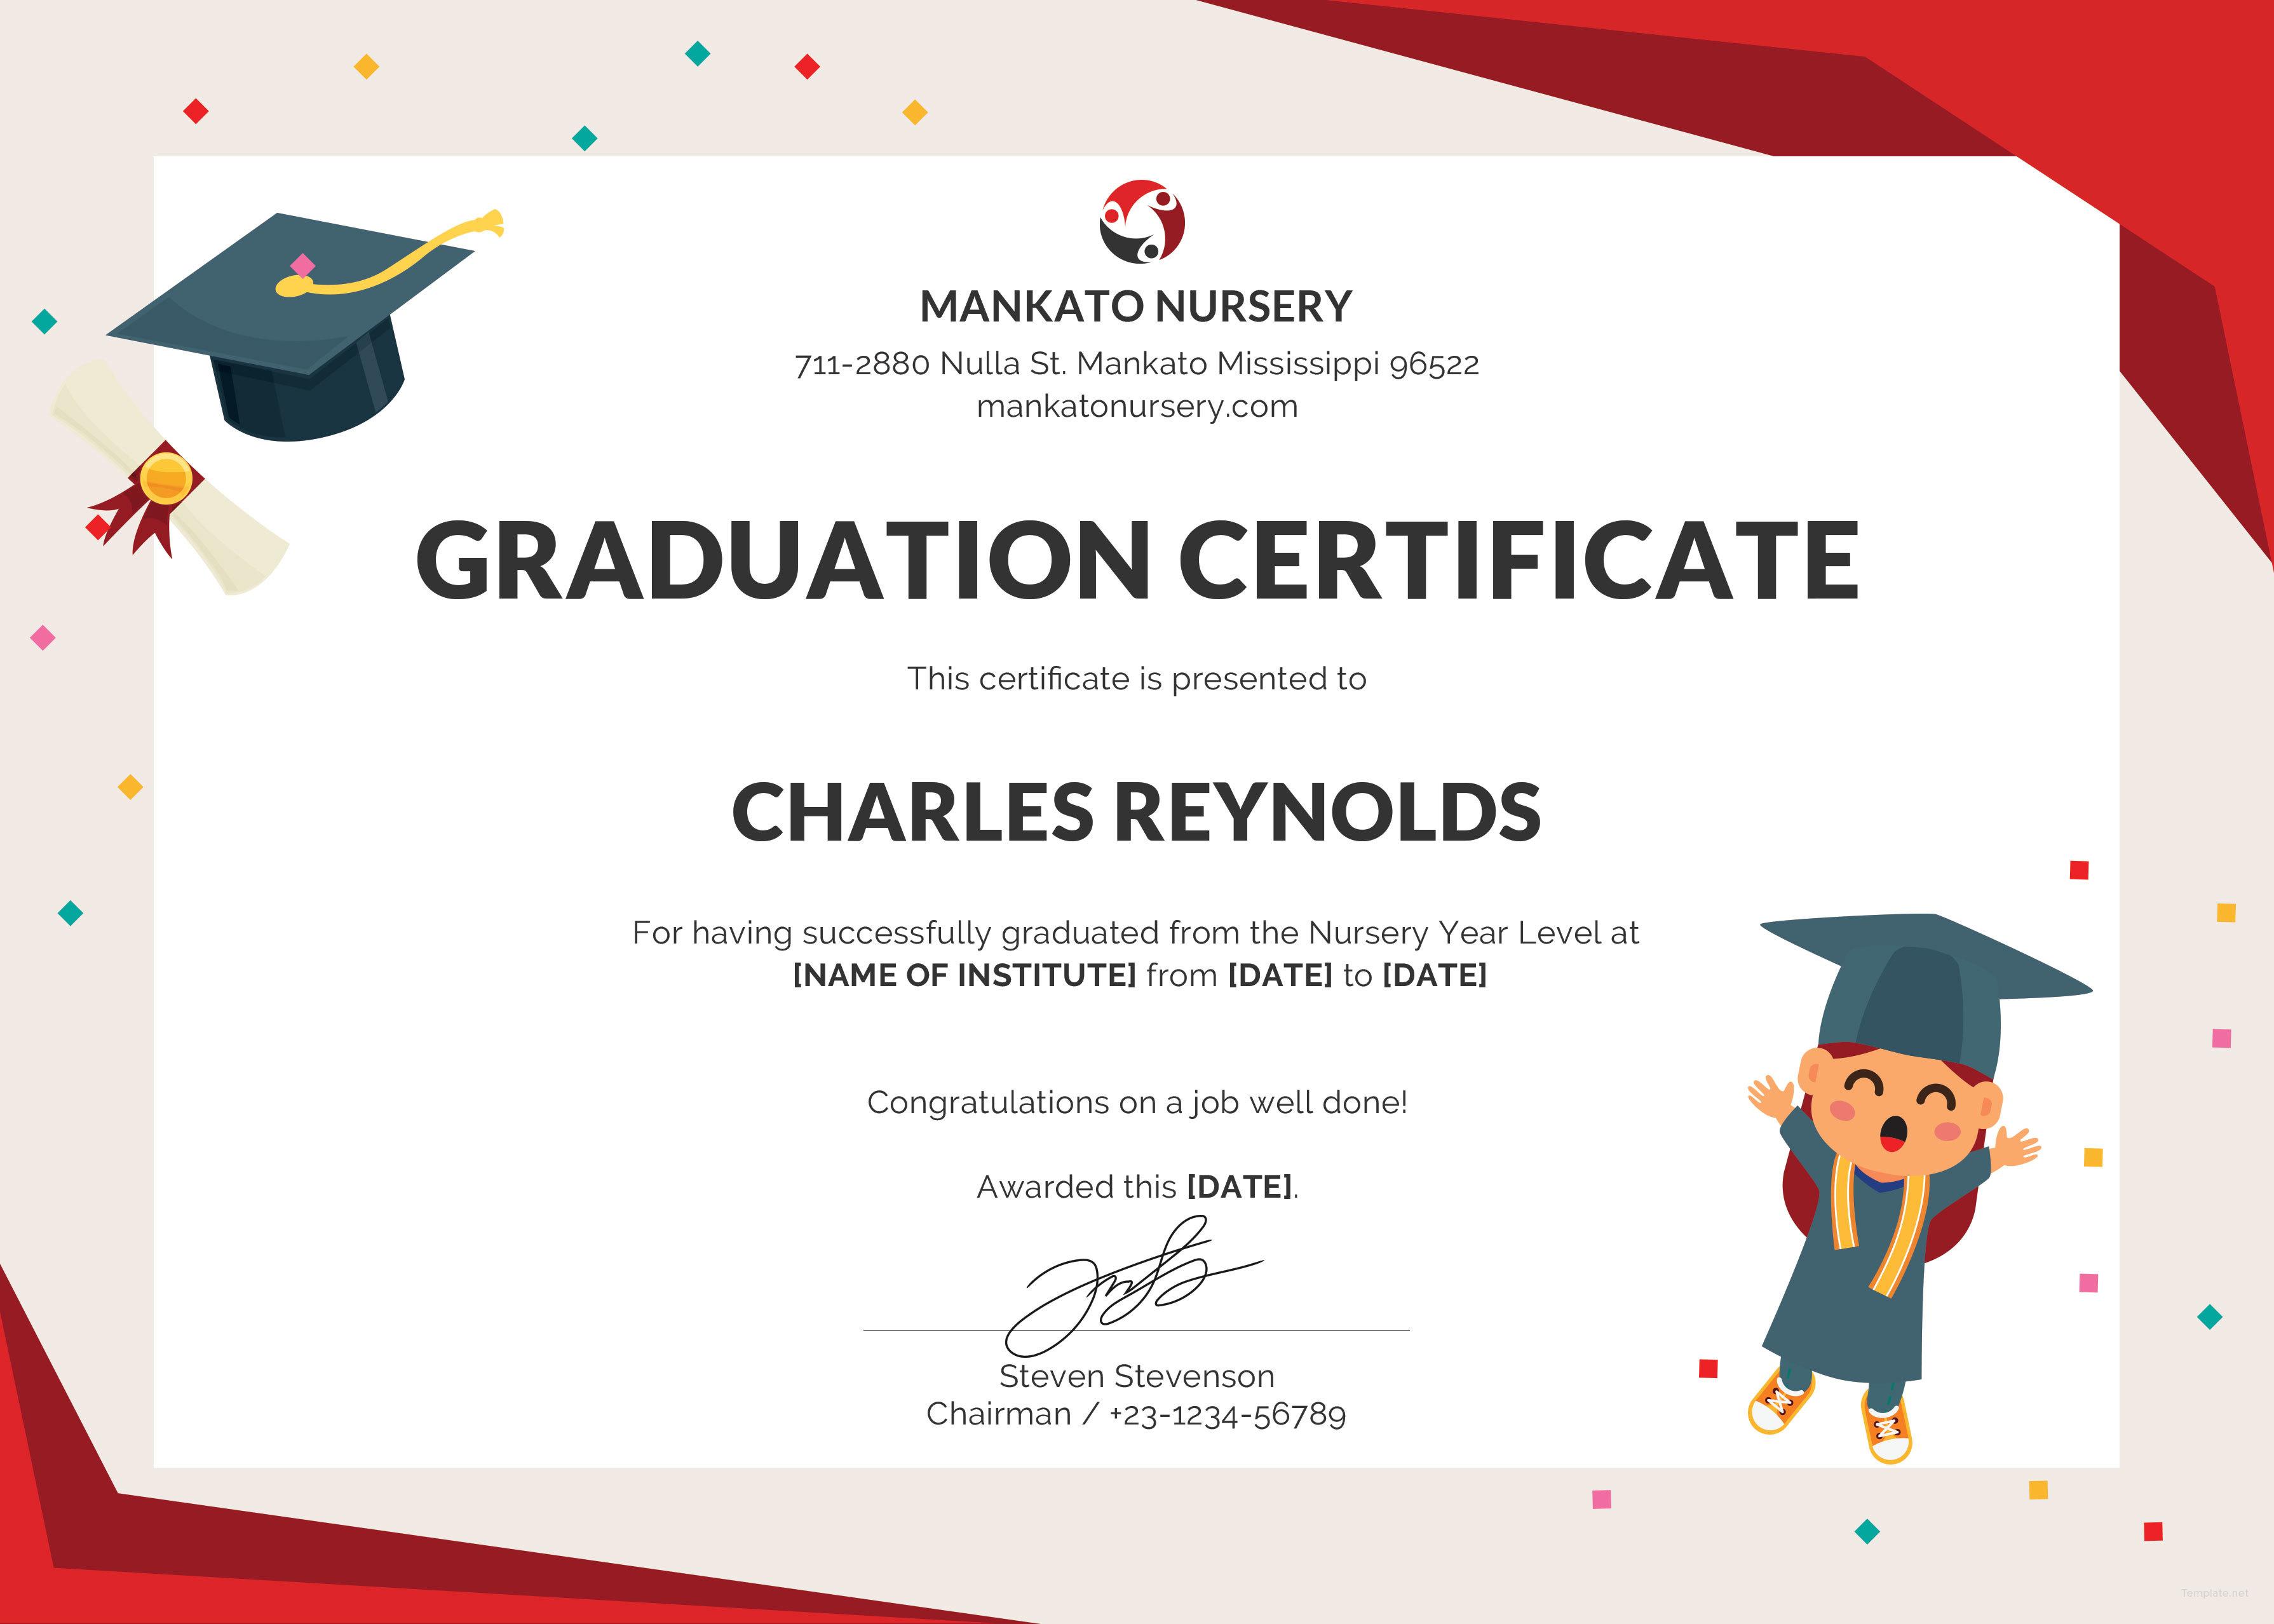 Graduation Certificate Template from certificateof.com